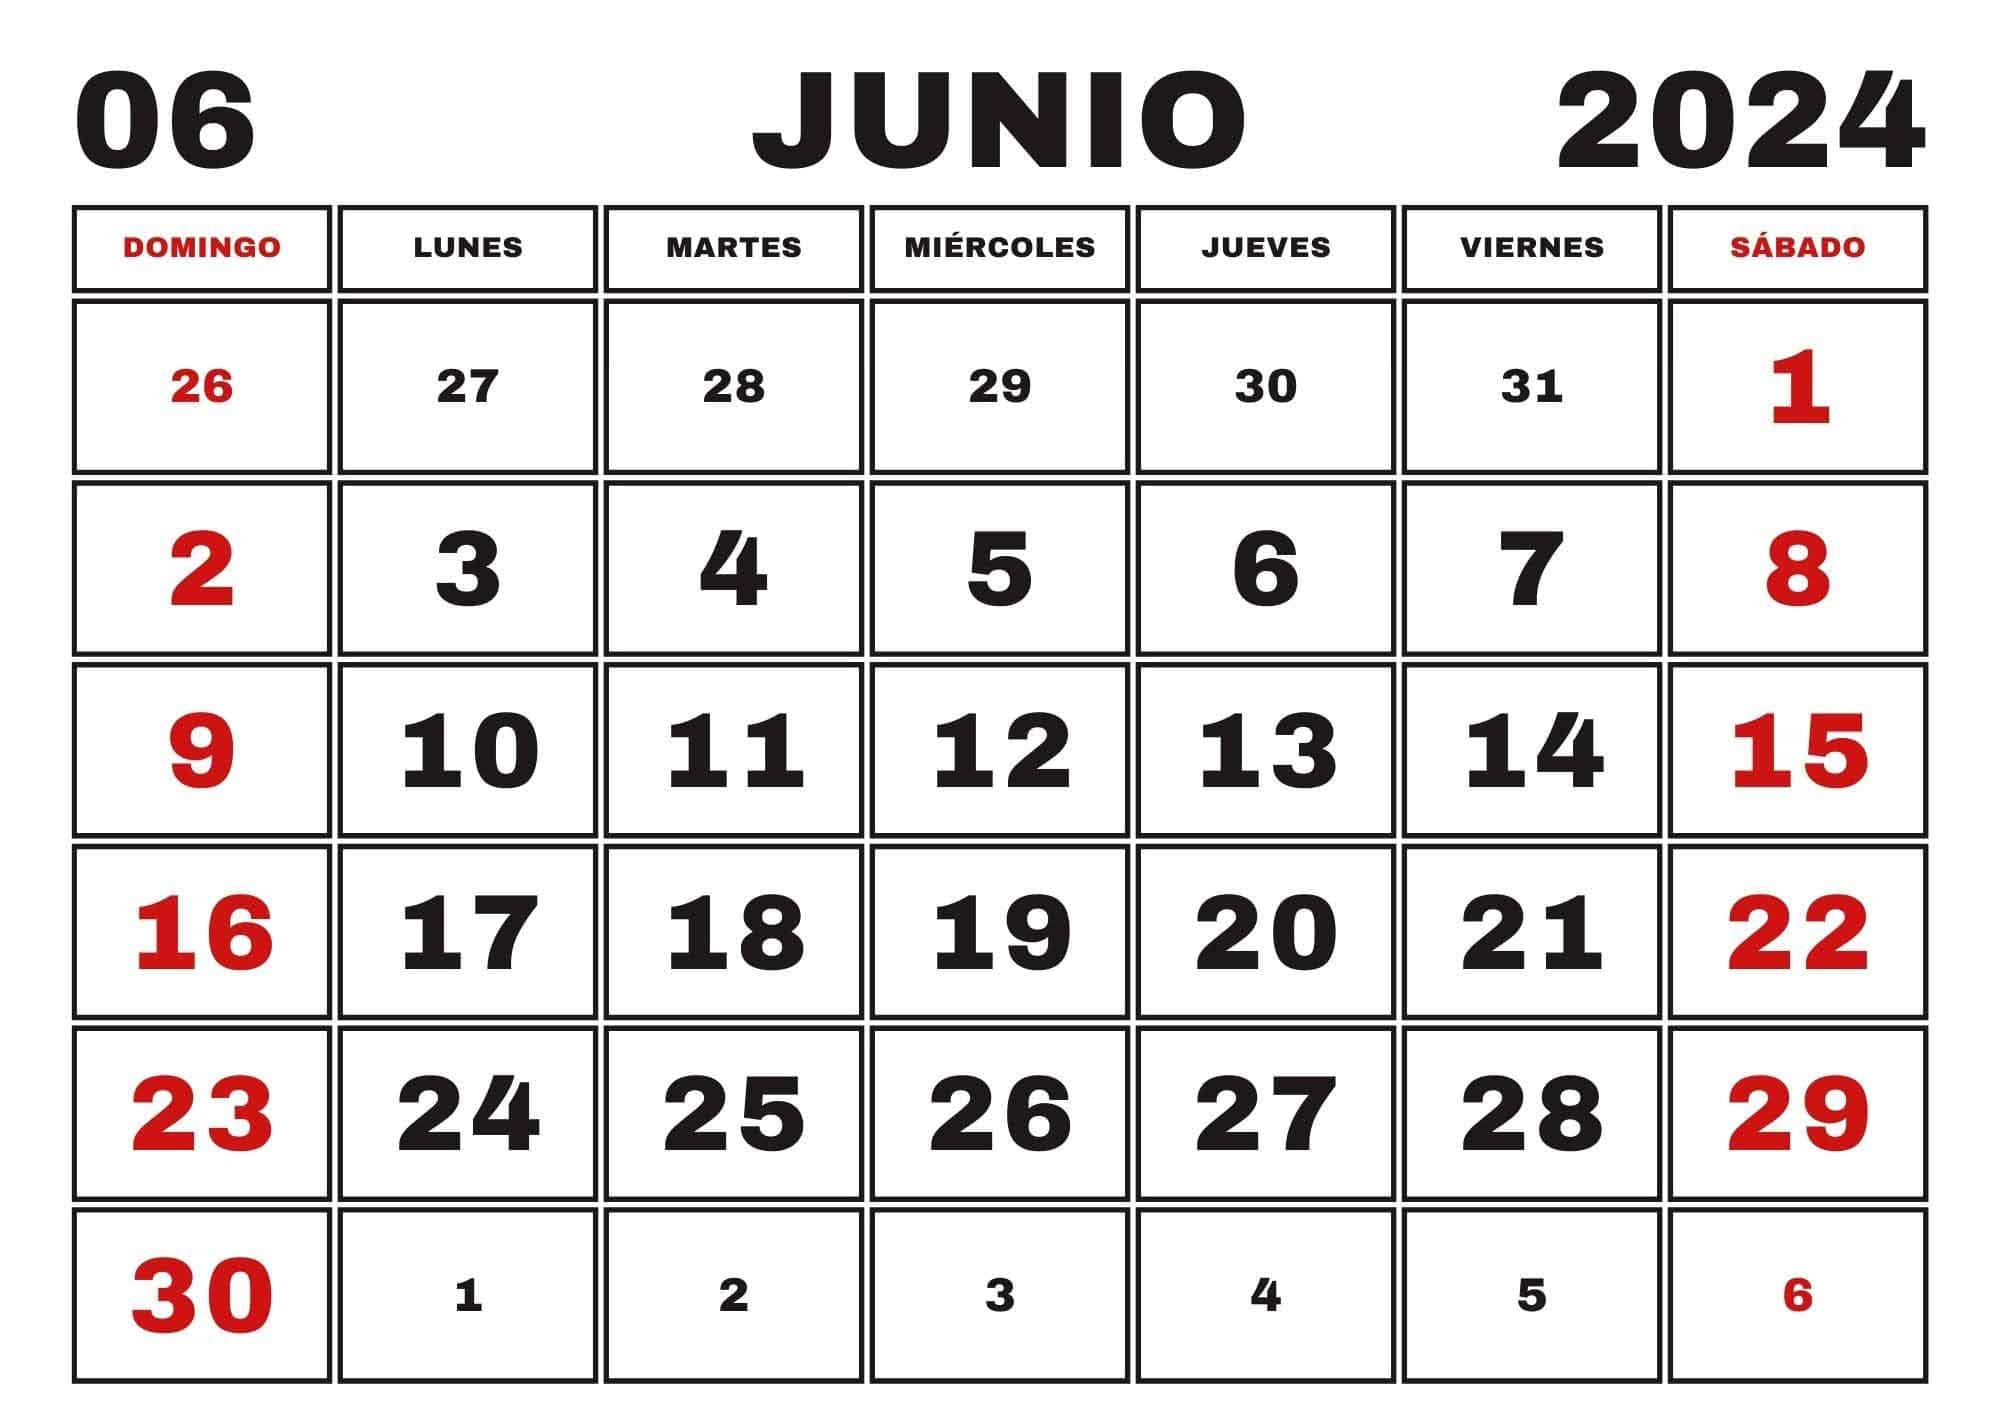 Calendario Junio 2024, Obtenga aquí el Calendario Junio 2024 para Imprimir